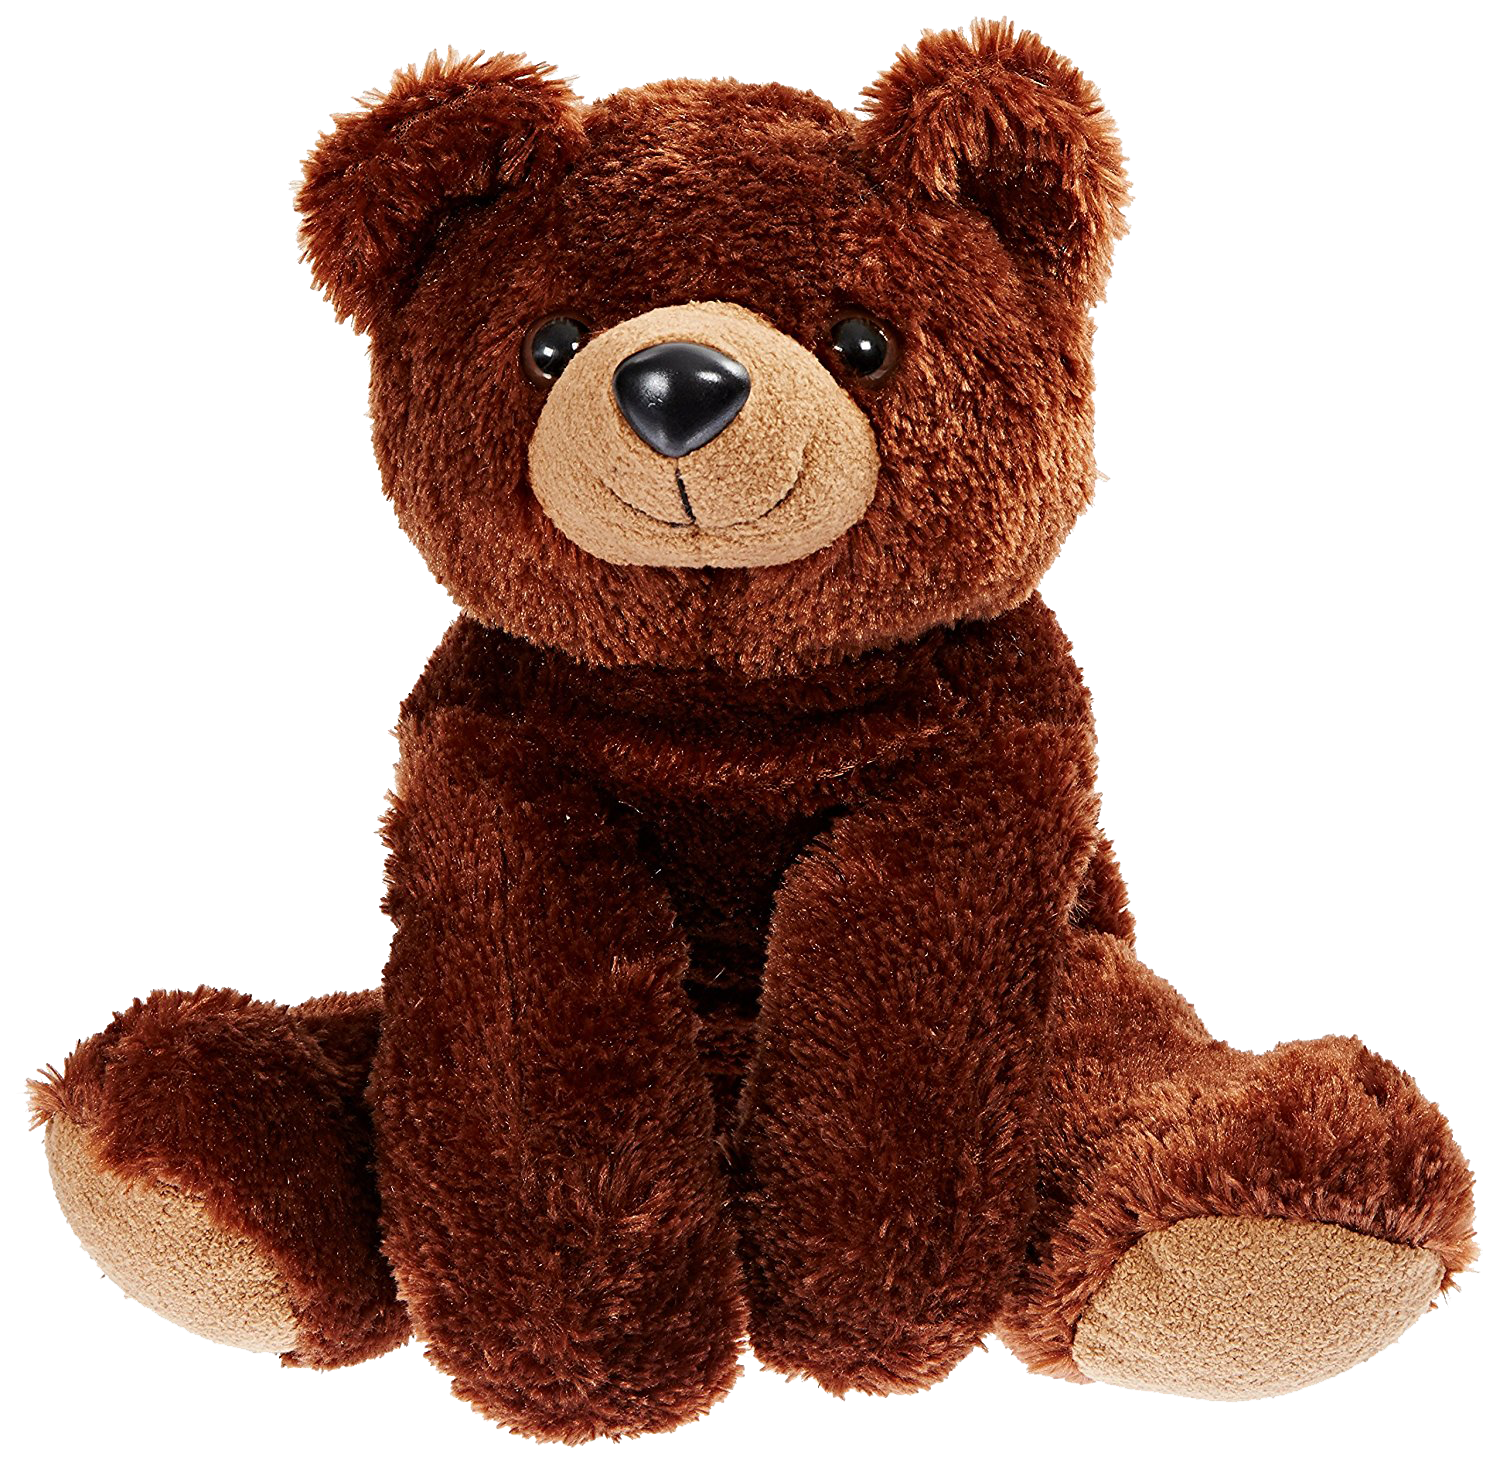 16 inch teddy bear